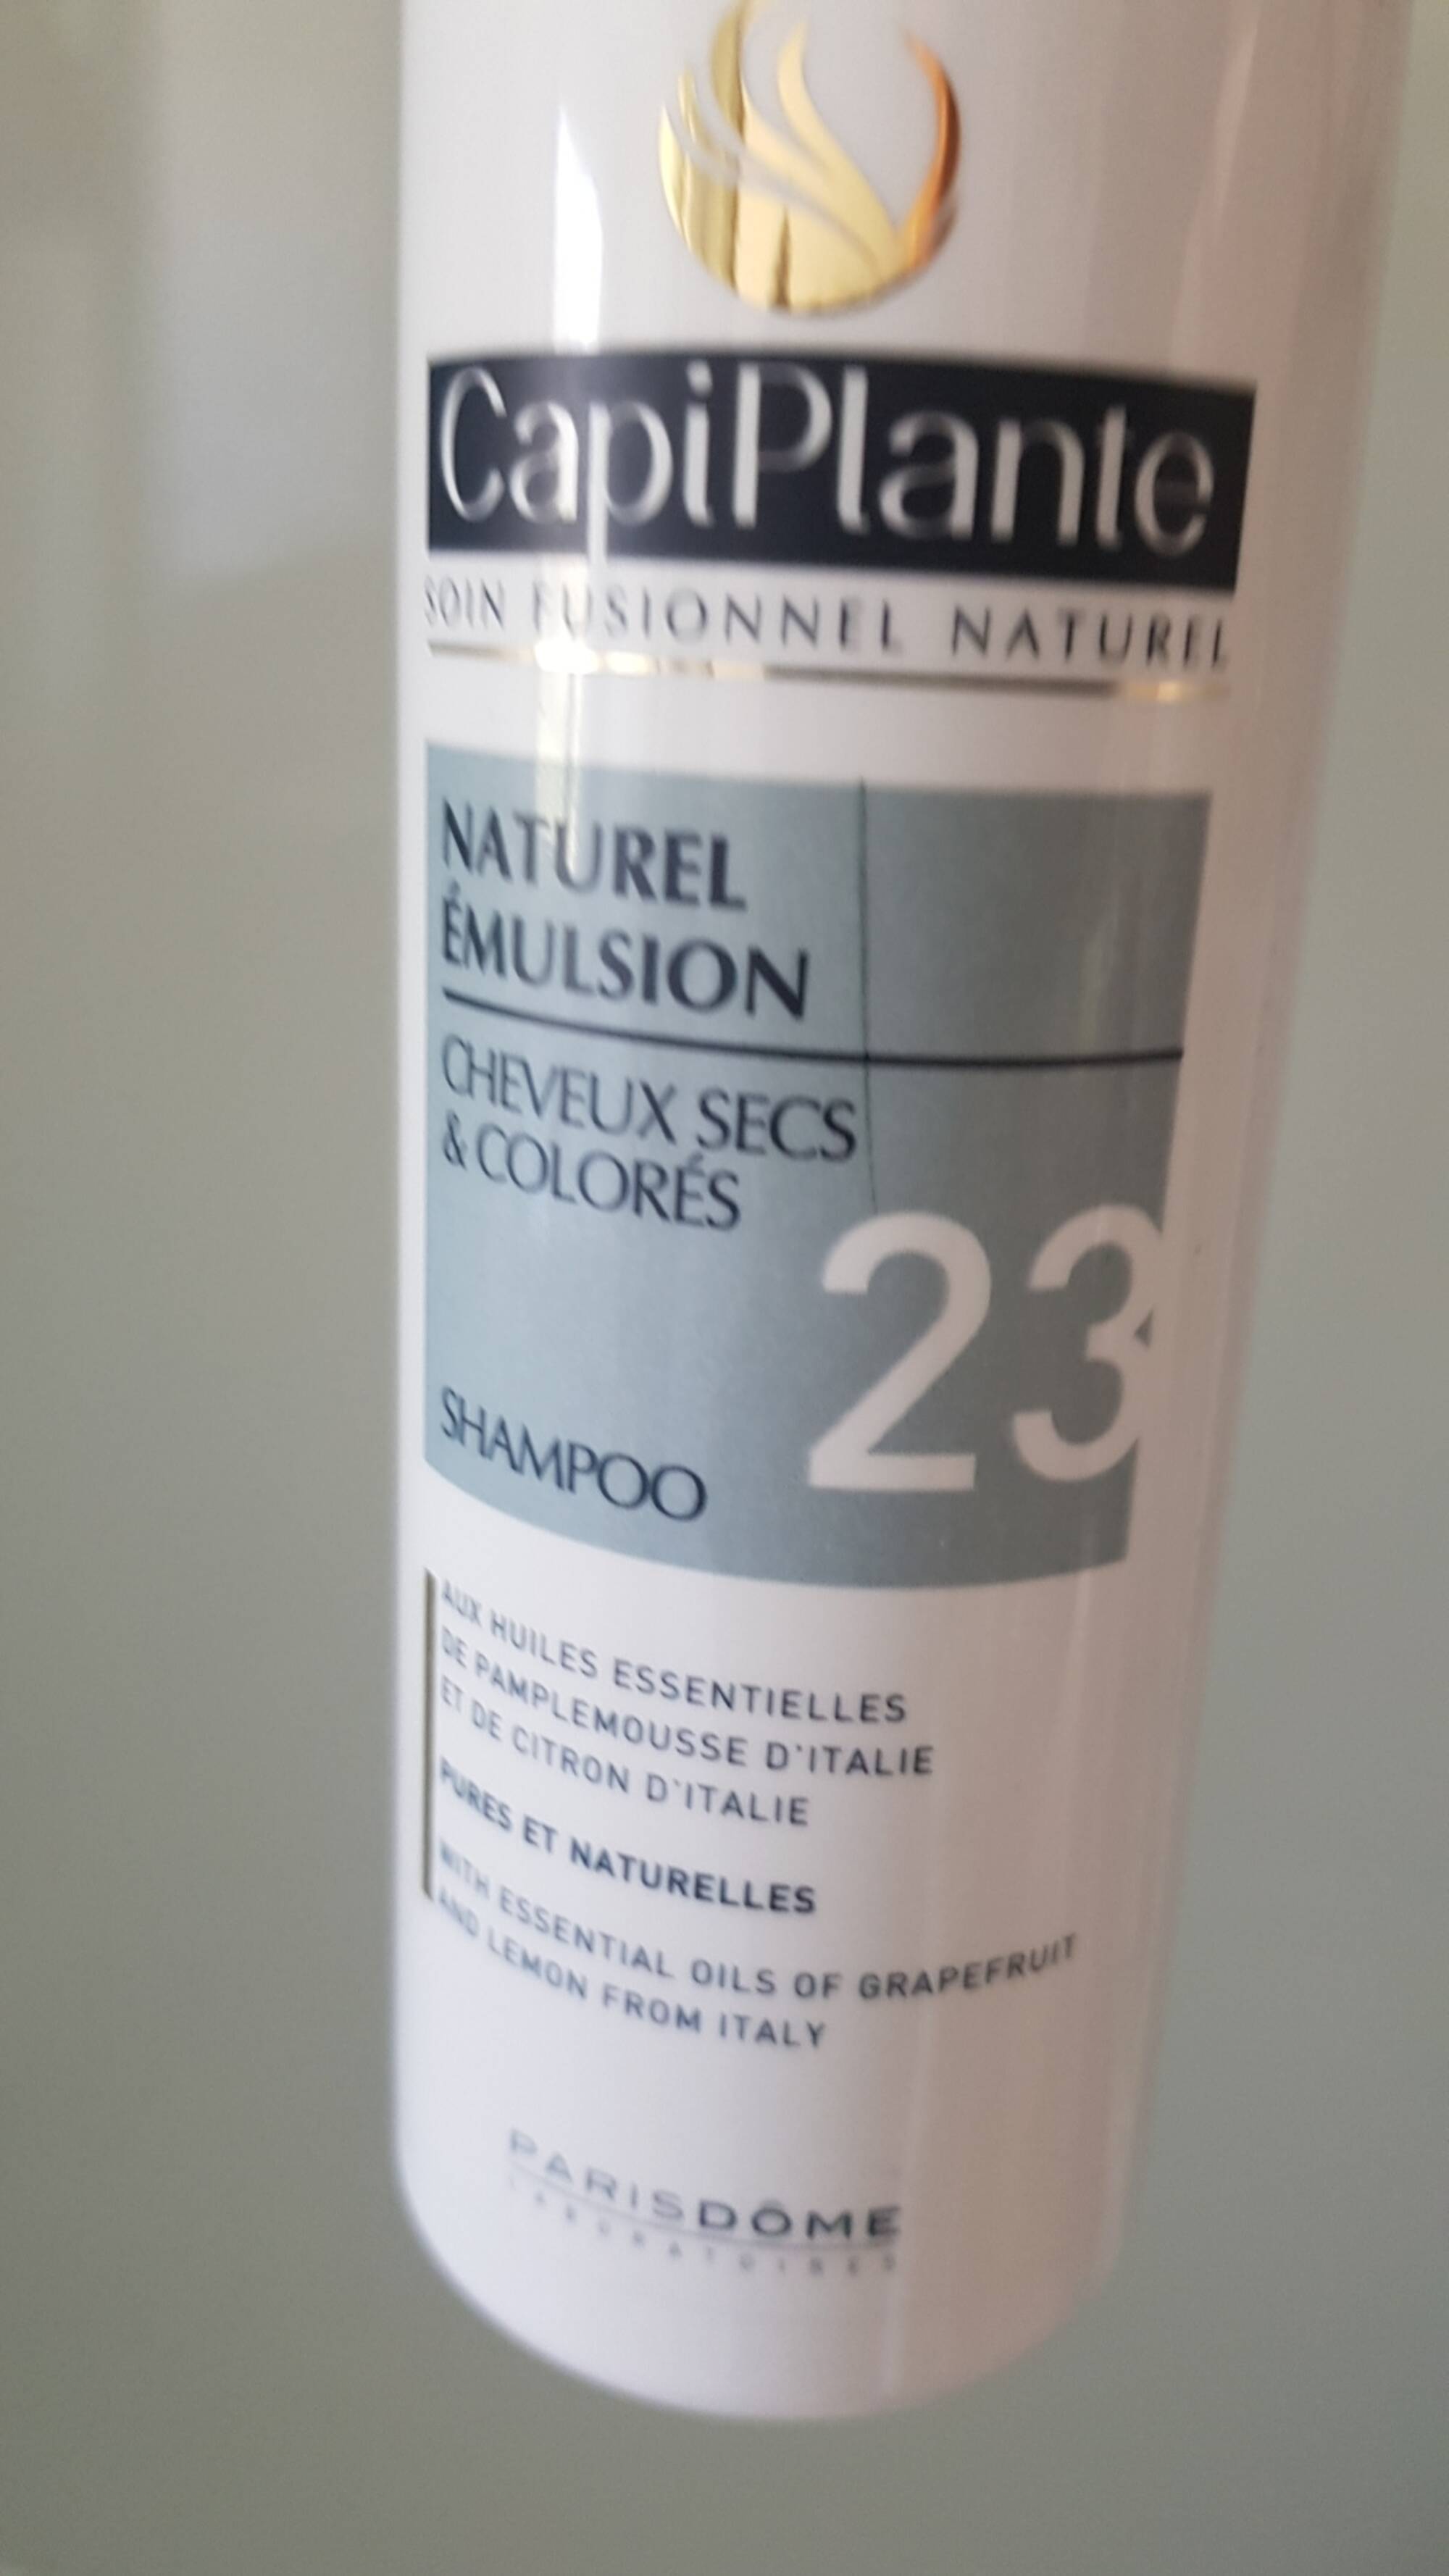 CAPIPLANTE - Naturel émulsion - Shampoo